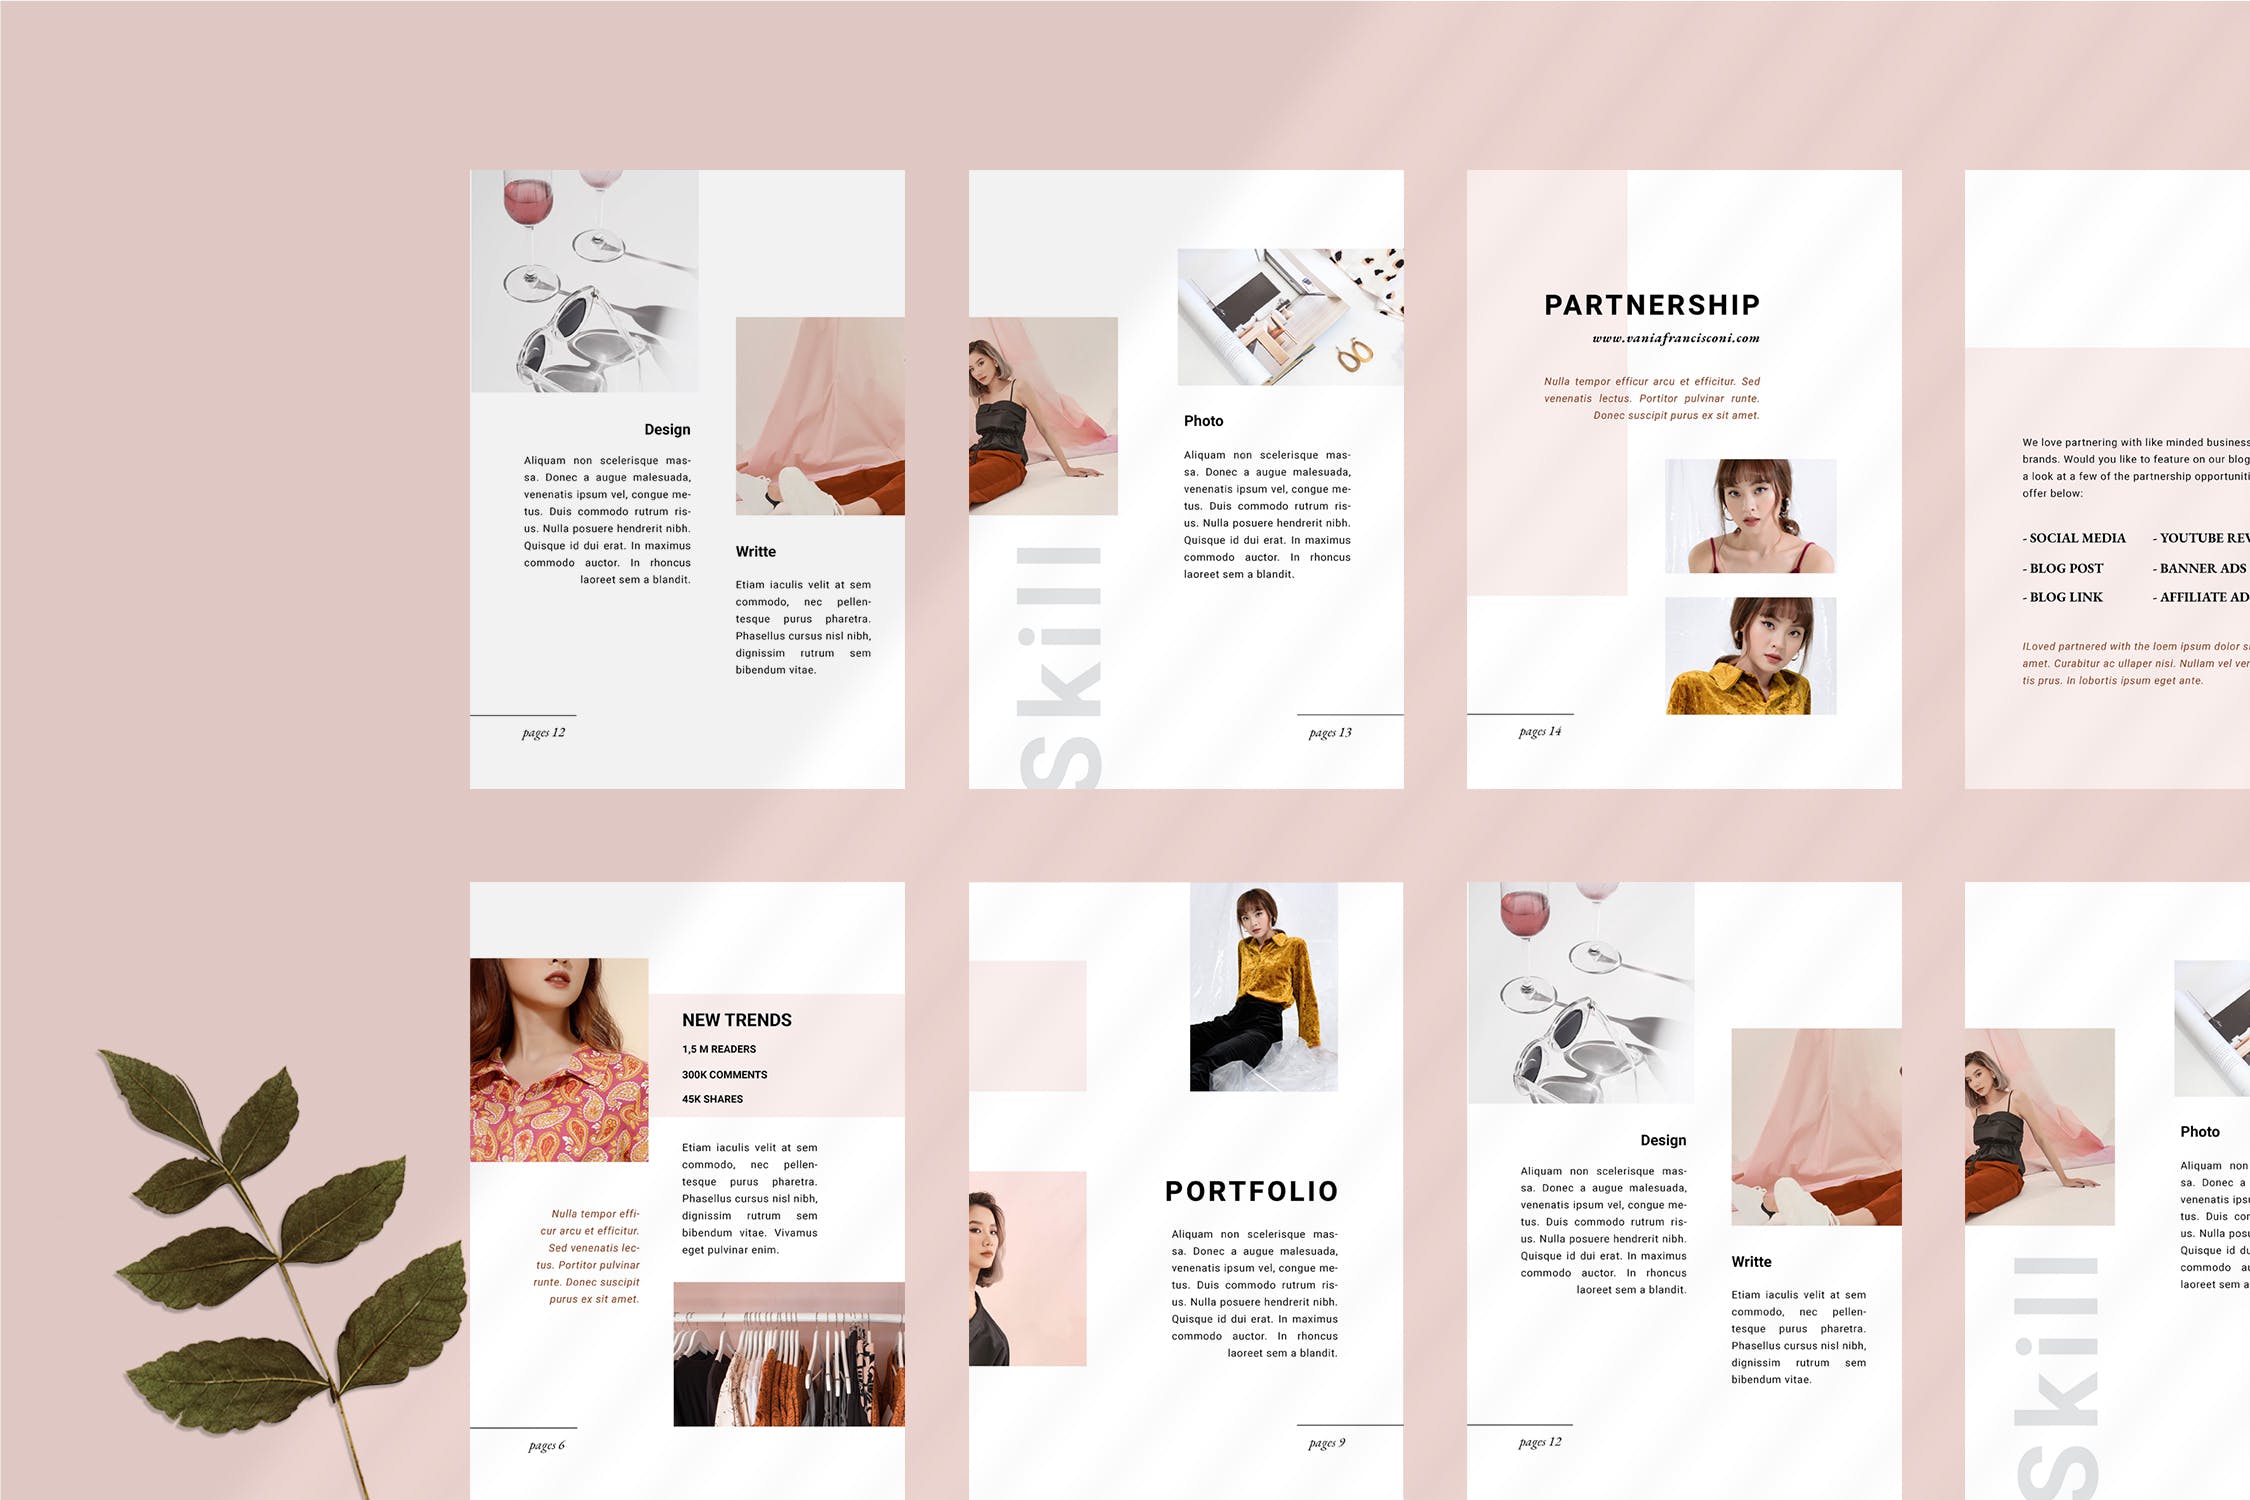 优雅时尚博客媒体品牌宣传设计素材工具包 Vania Media / Press Kit Template插图(3)